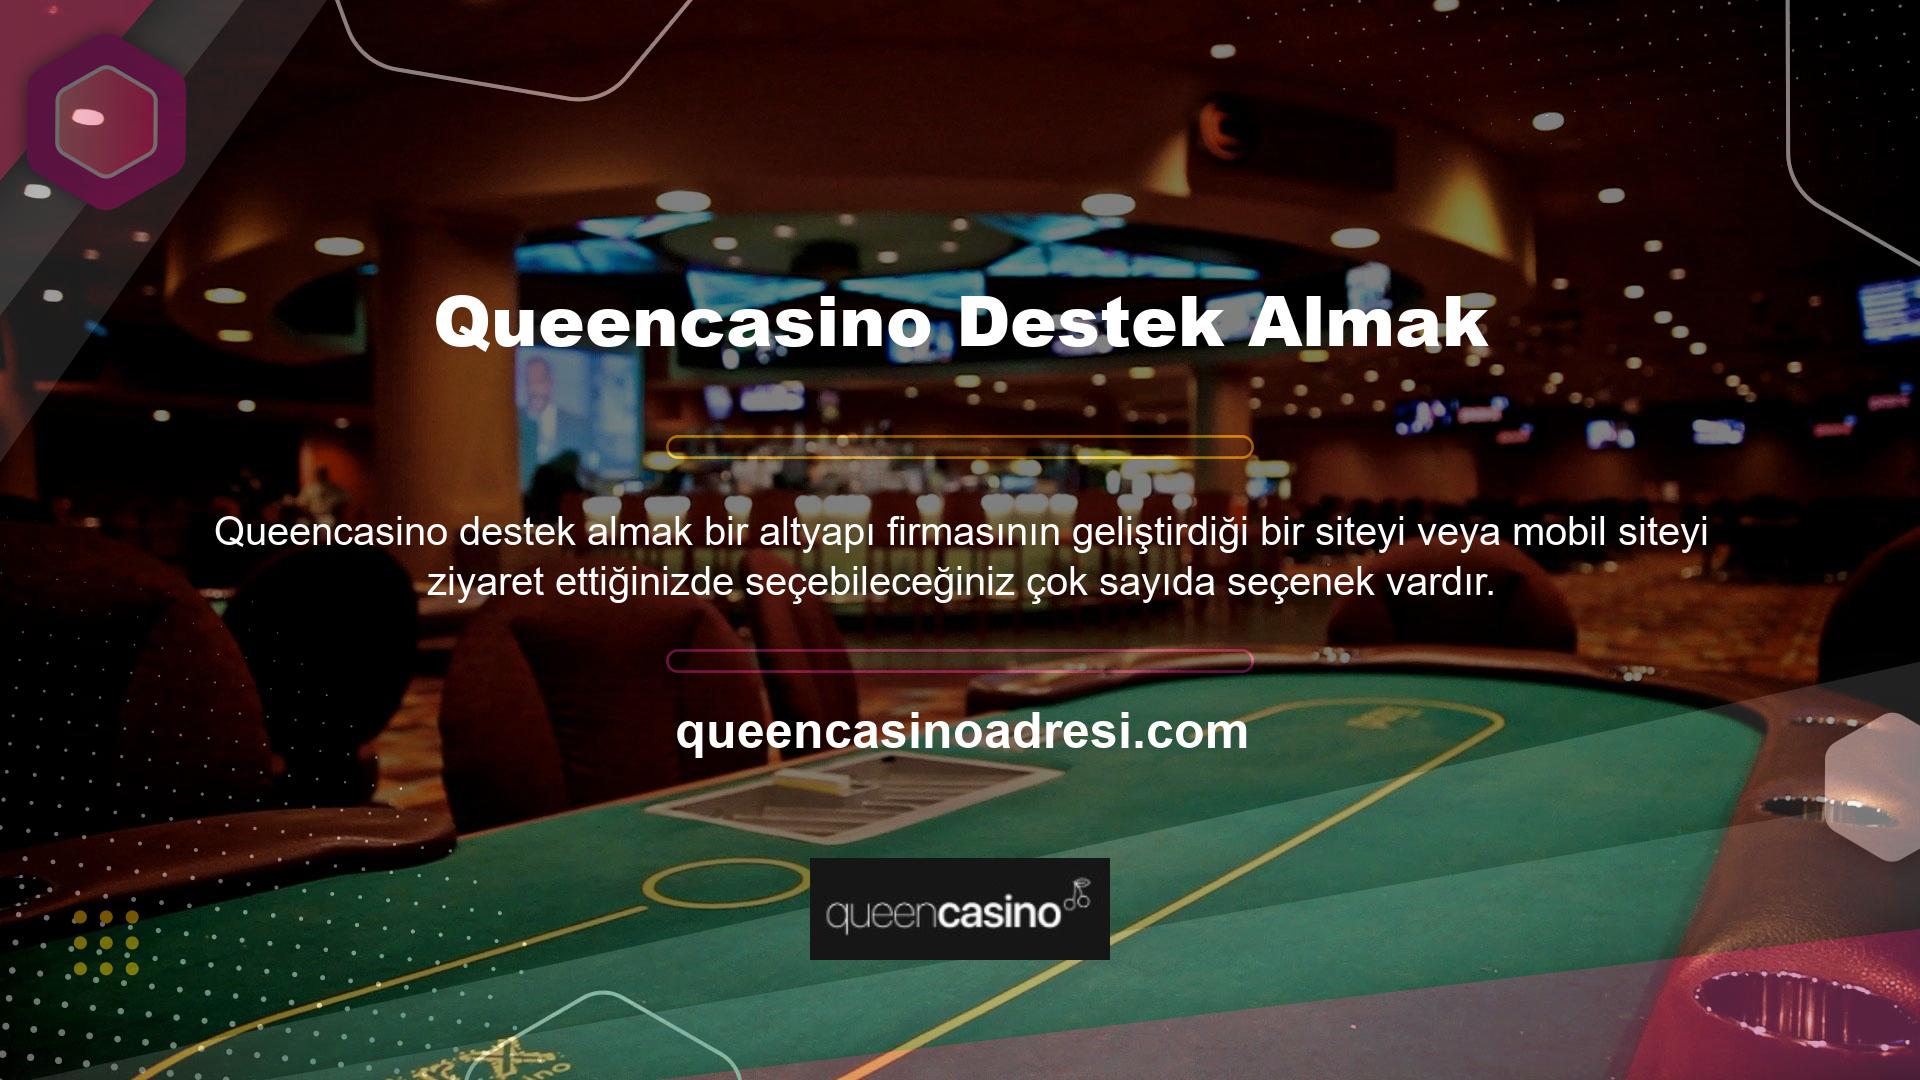 Queencasino, spor bahisleri ve casino sitelerindeki hakimiyetini yıllardır sürdürüyor